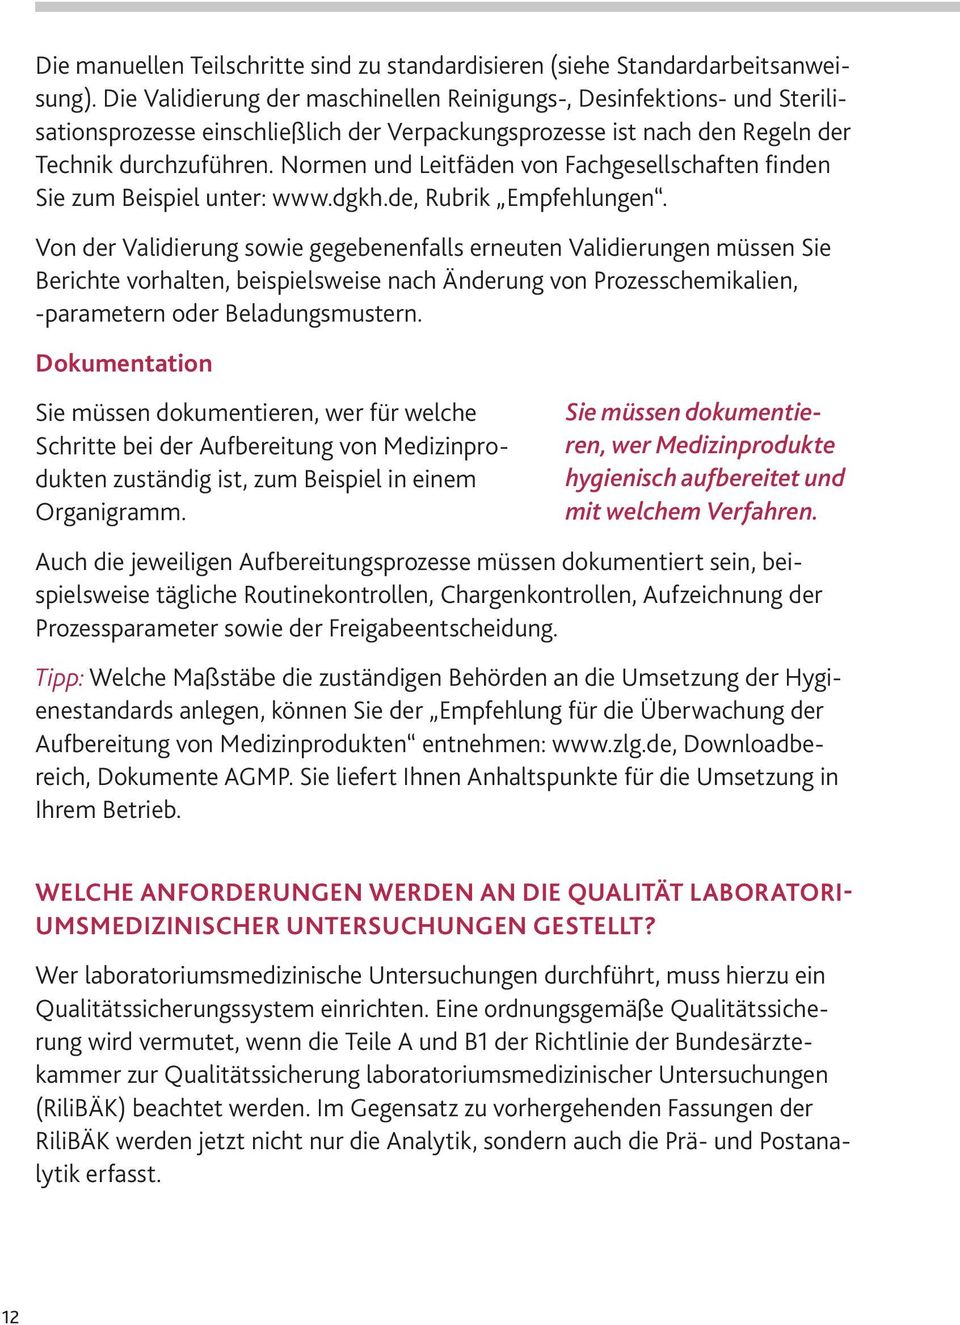 Normen und Leitfäden von Fachgesellschaften finden Sie zum Beispiel unter: www.dgkh.de, Rubrik Empfehlungen.